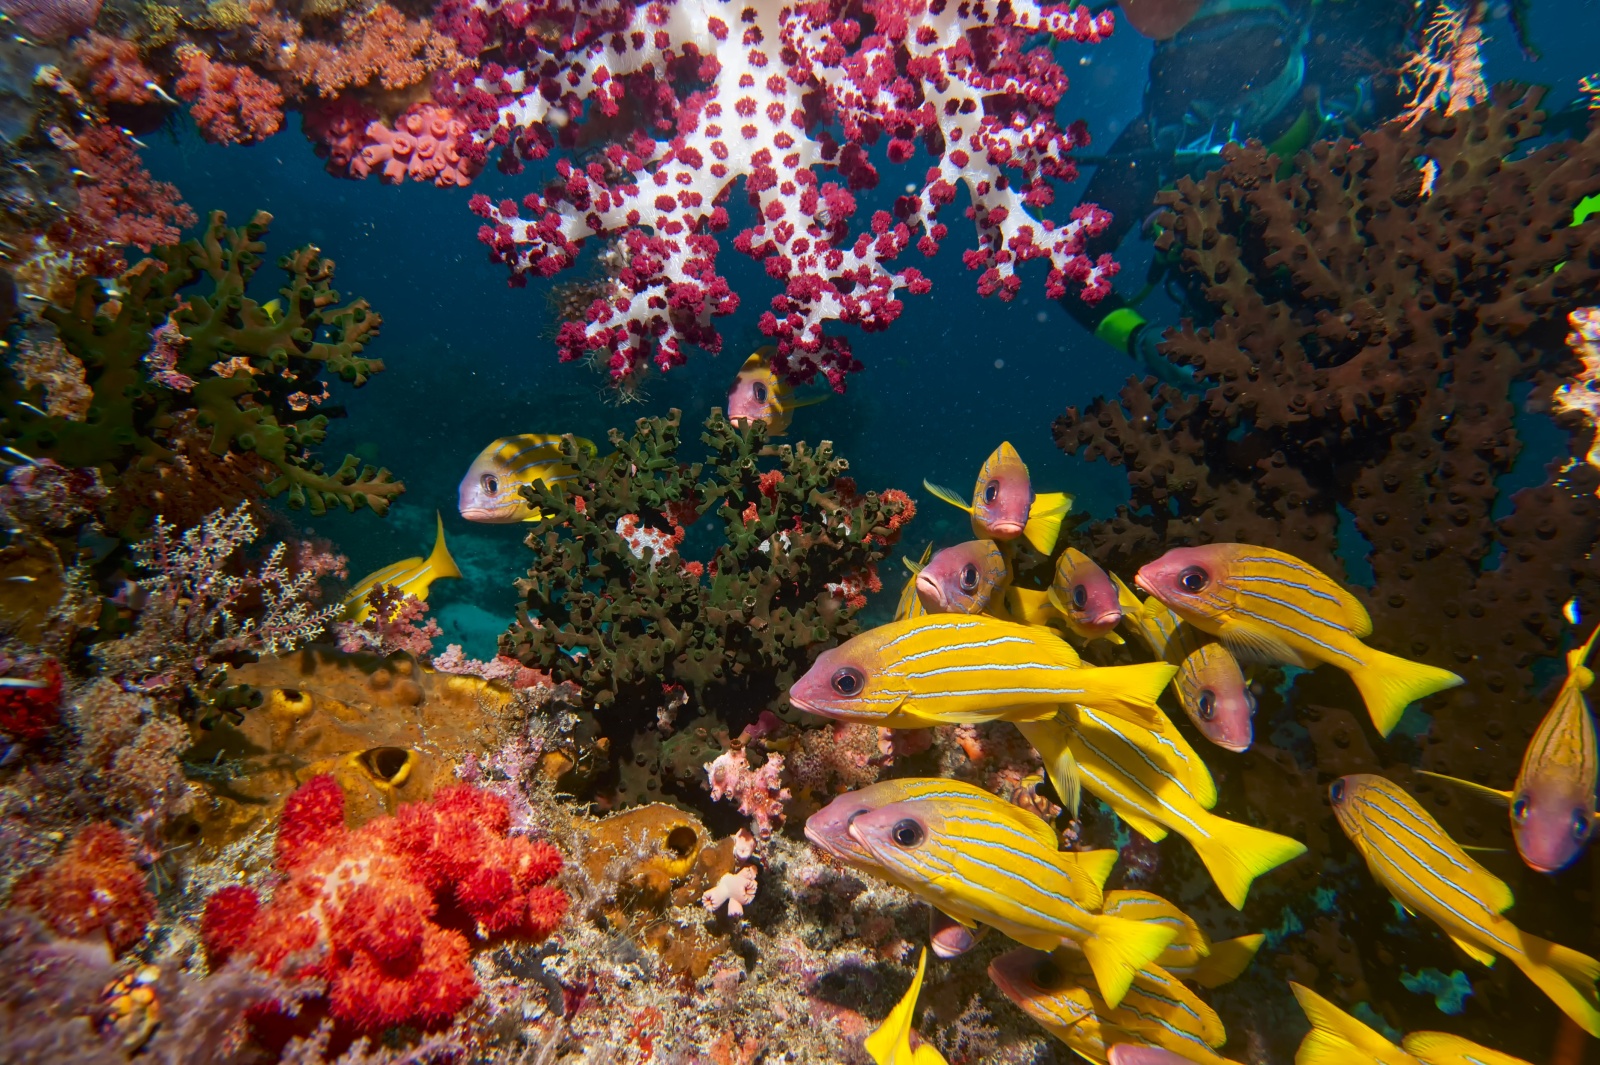 Una finestra sull'acquario - Nascosta fra alcionari e coralli duri una subacquea d'eccezione - Little Red Fish - osserva l'immenso coloratissimo acquario del mare indonesiano (Raja Ampat - Papua)